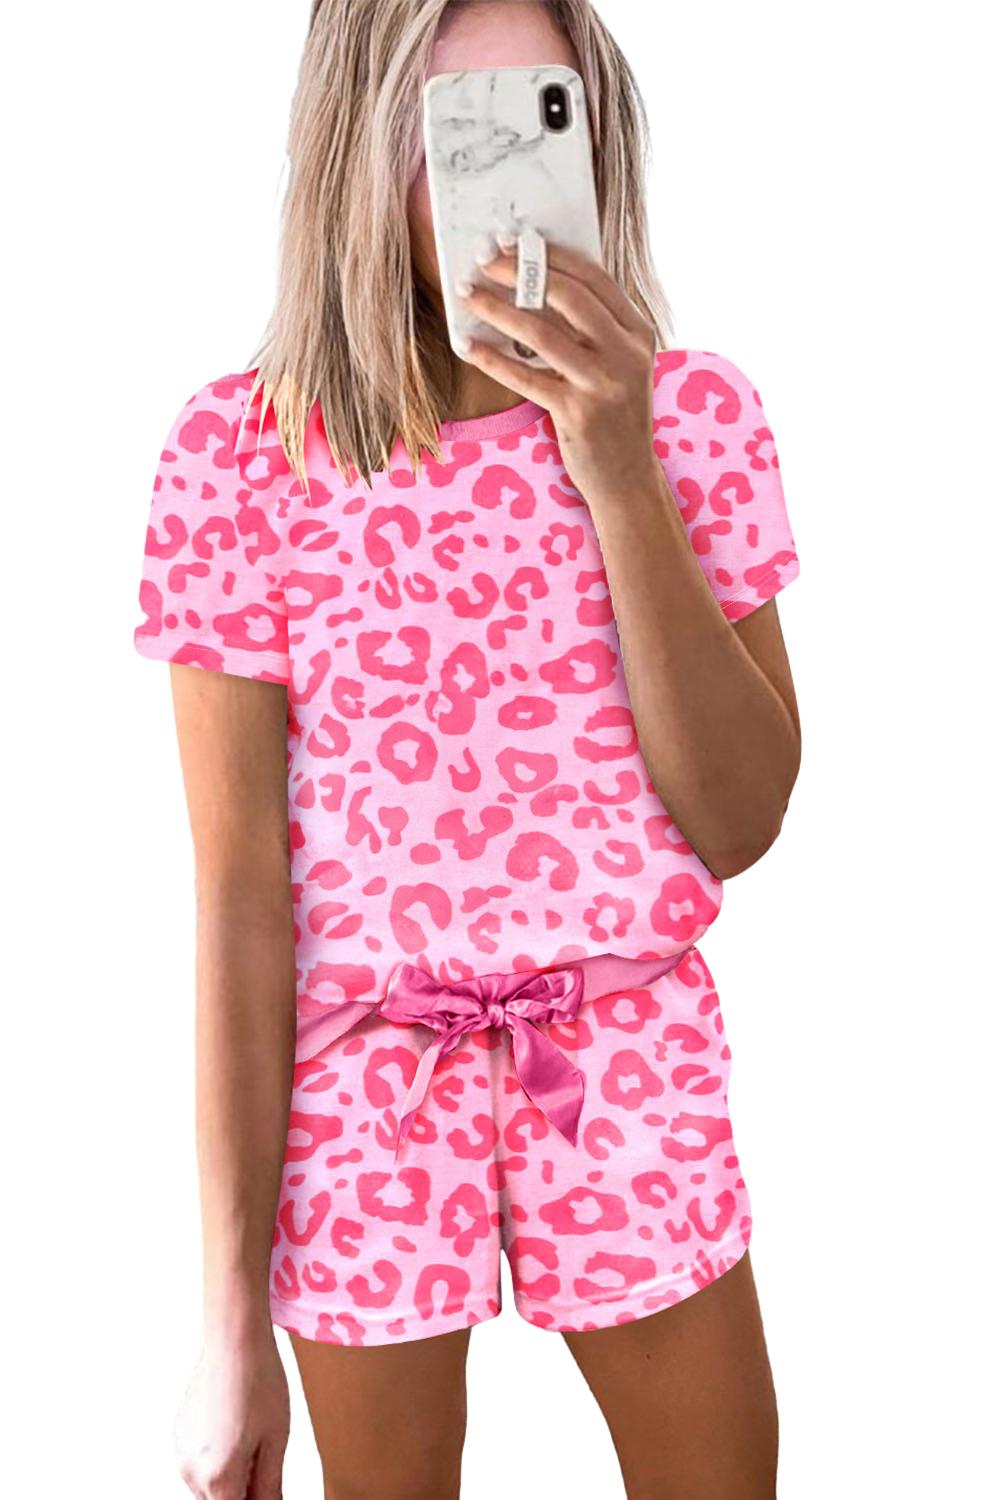 Pink Leopard Print Drawstring Shorts Loungewear Set